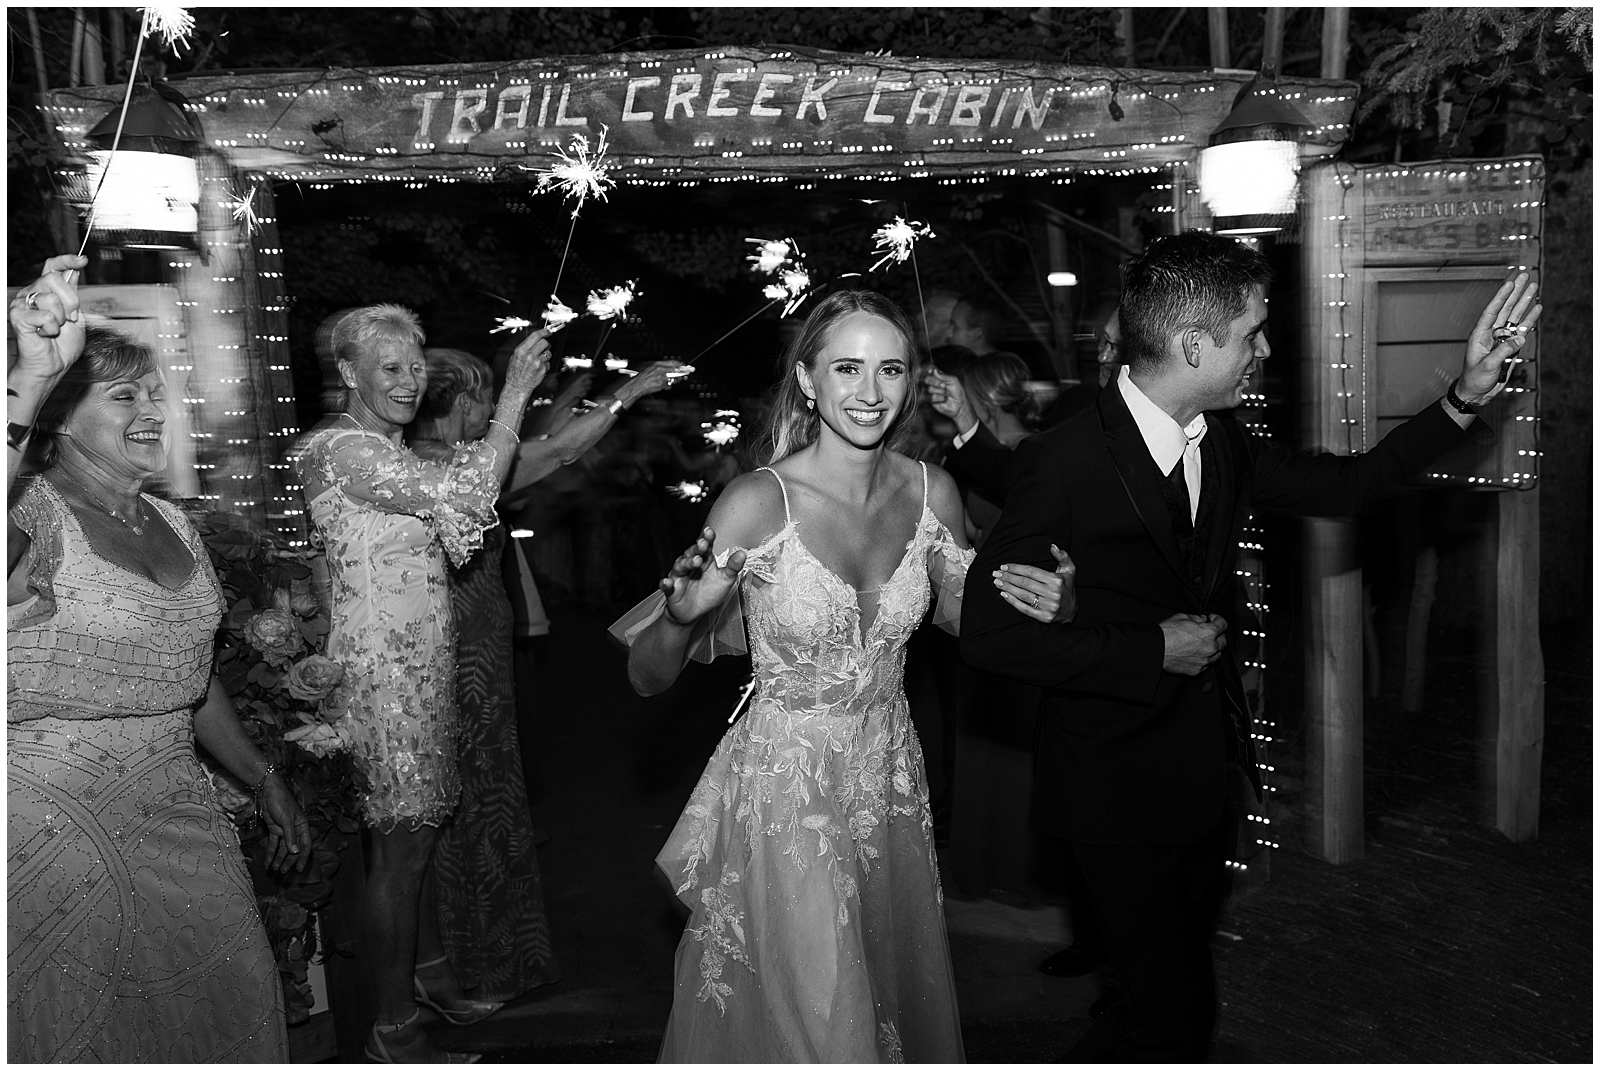 Trail Creek Cabin Wedding at Sun Valley Resort Sparkler Send off